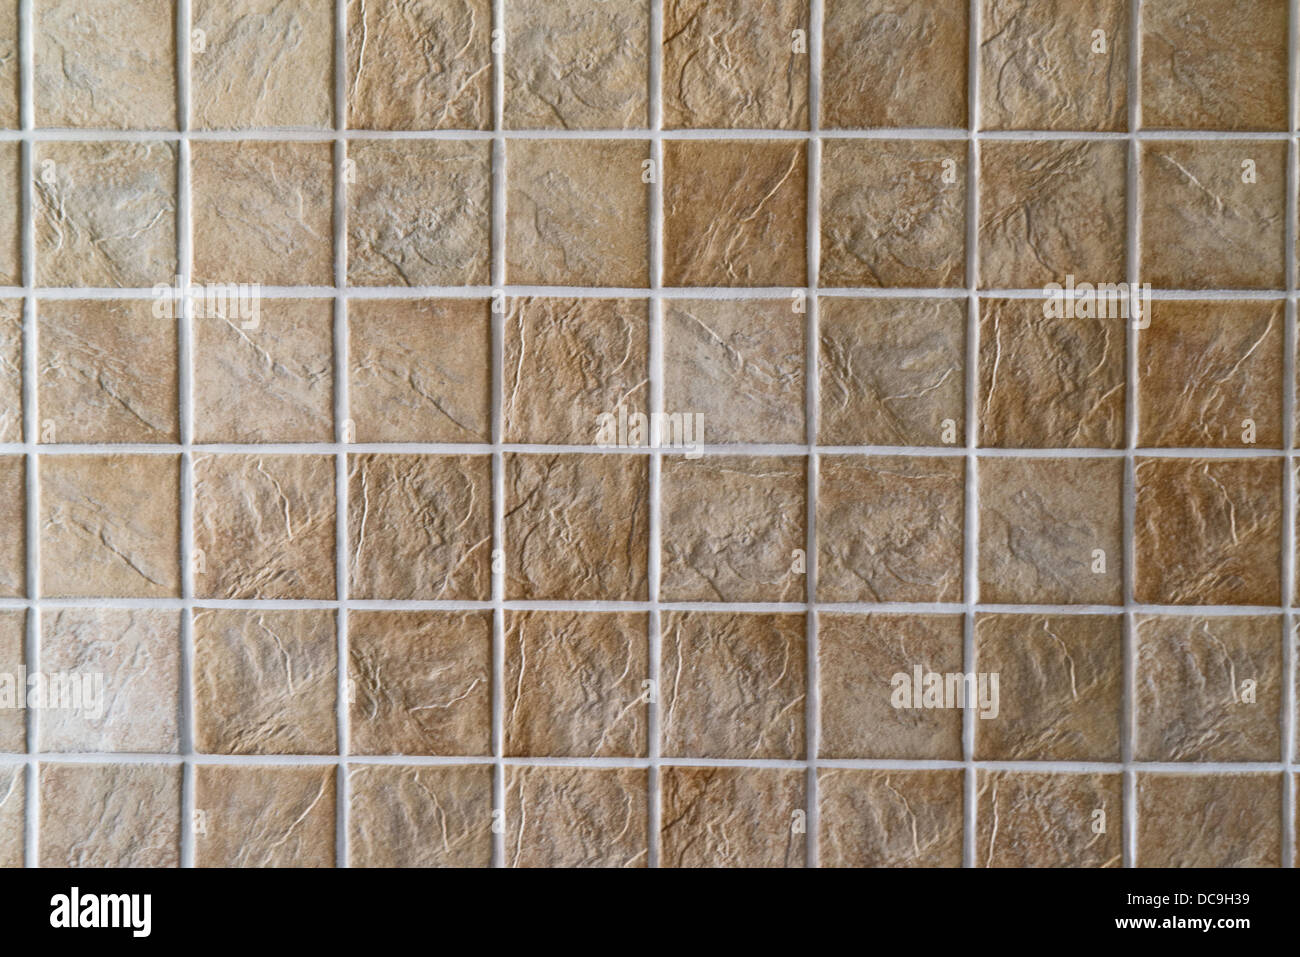 Le piastrelle di ceramica. Il beige mosaico di piastrelle in ceramica per parete o pavimento. Foto Stock